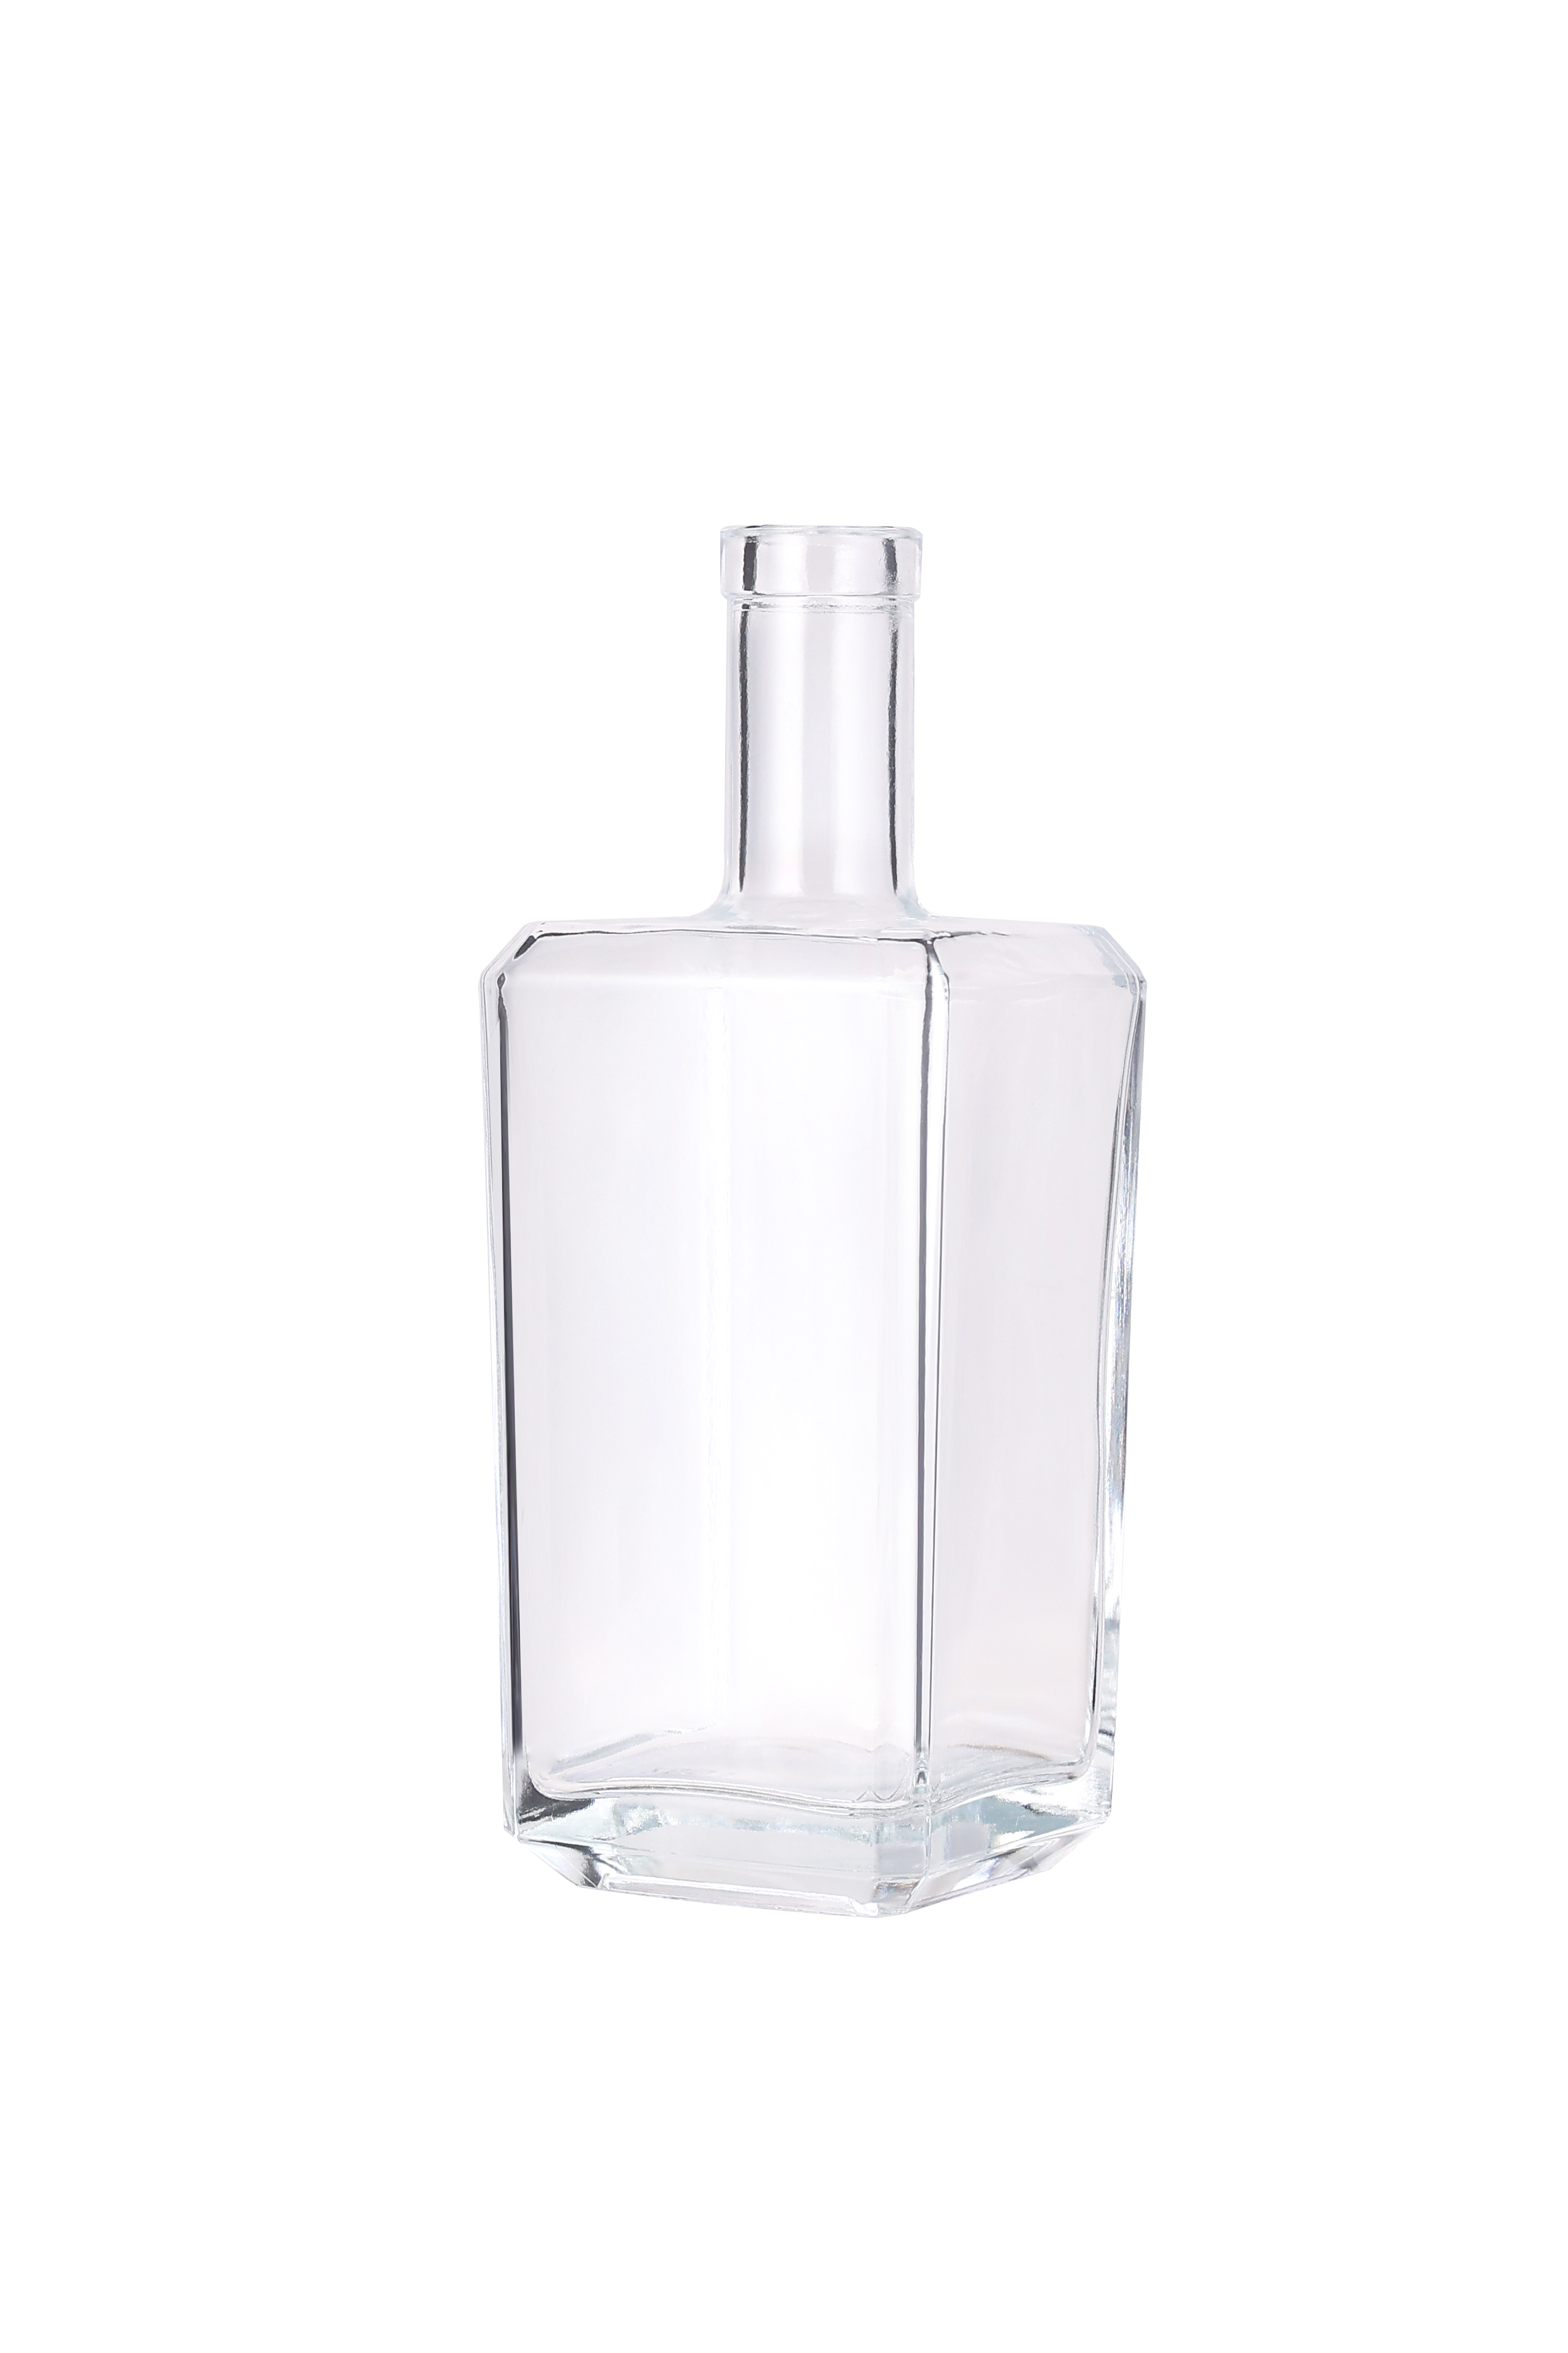 Design Vodka Liquor Glass Bottle